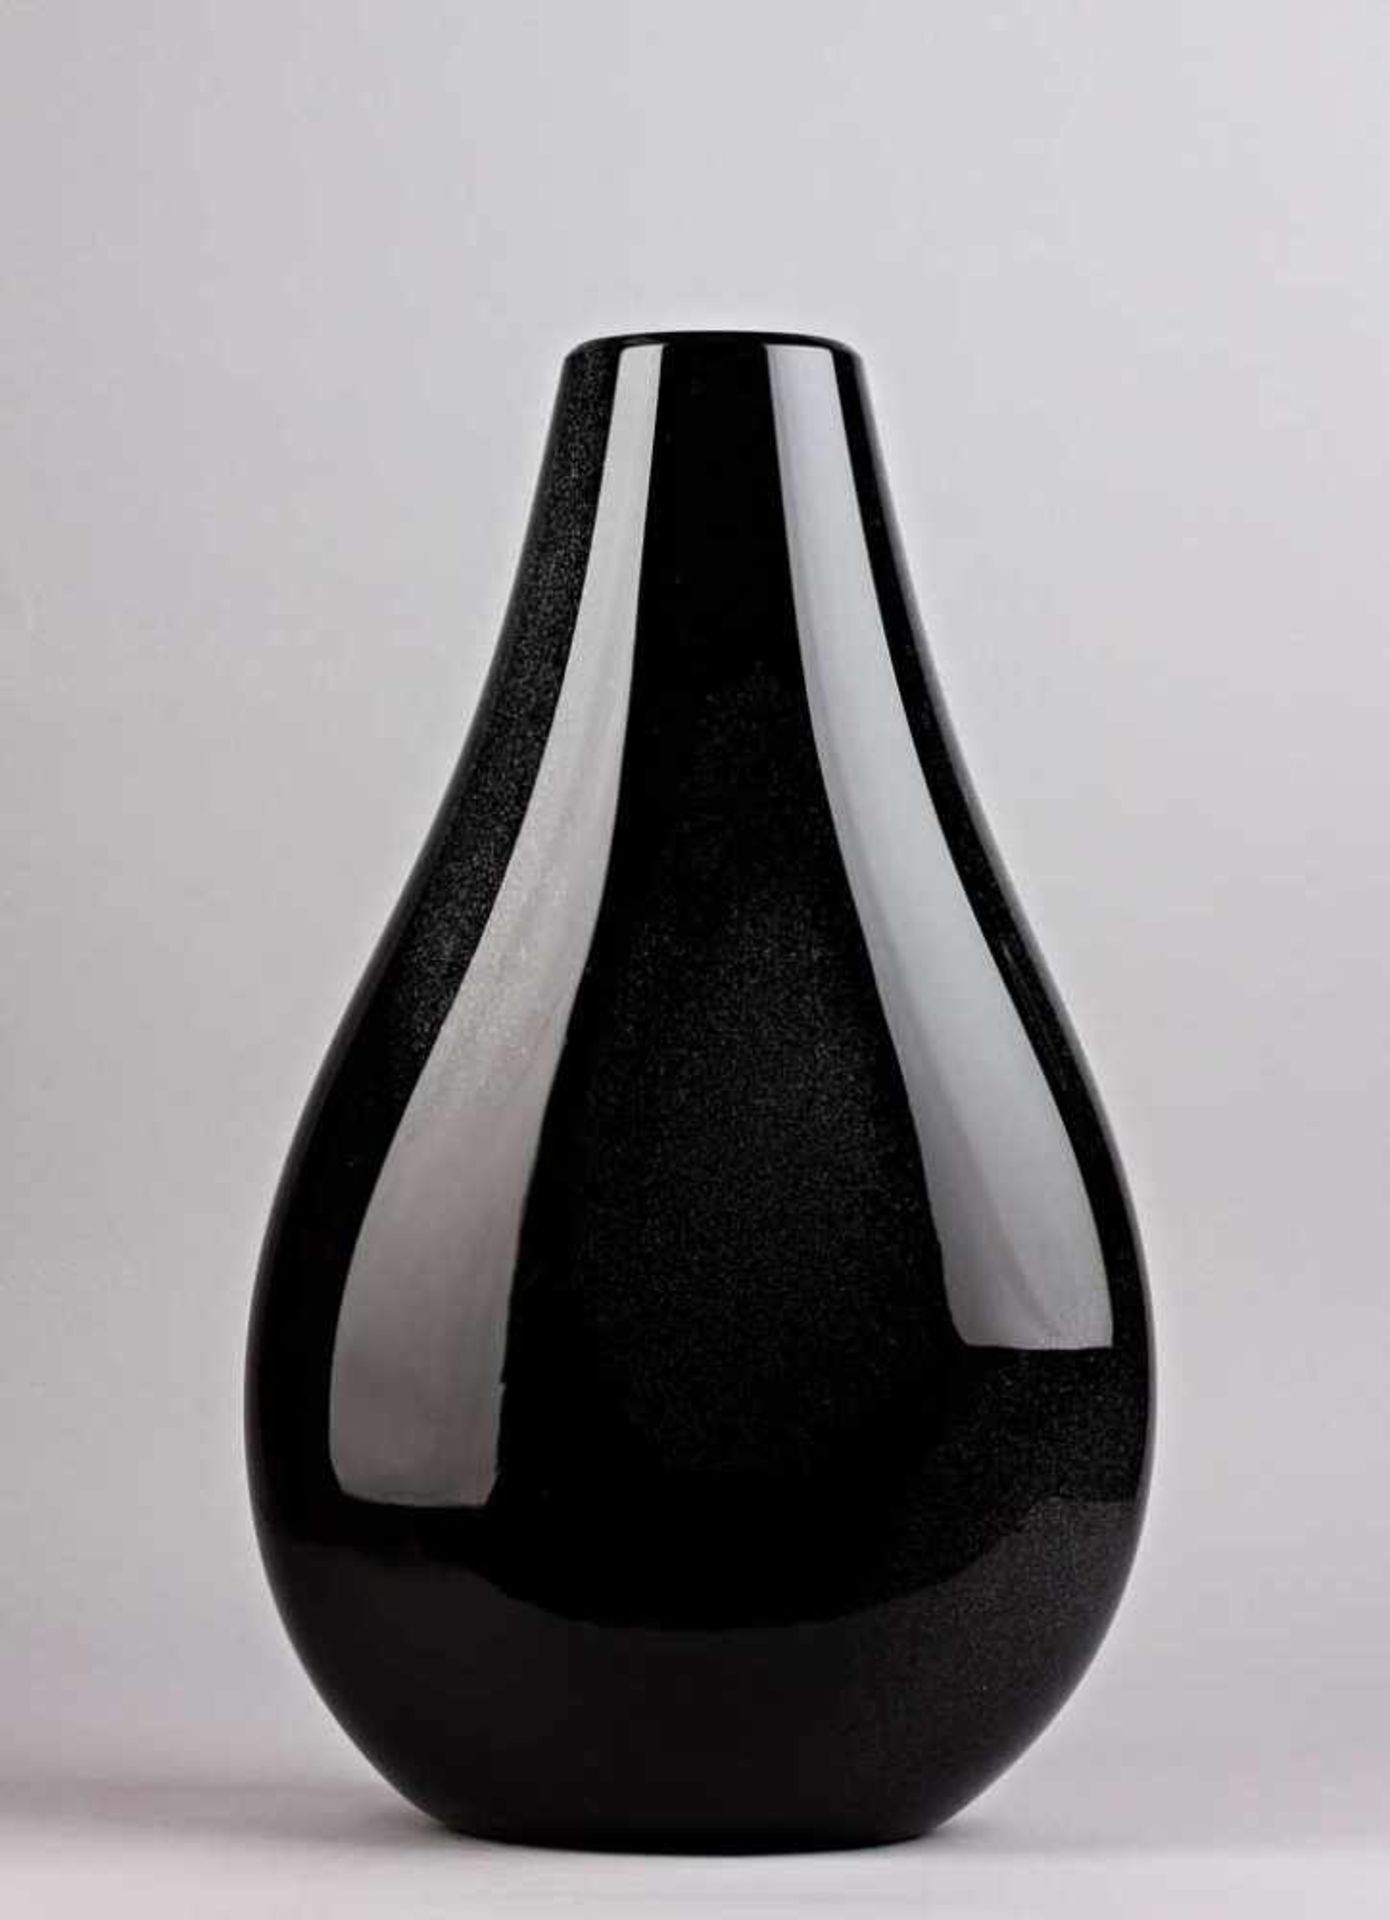 Große Vase. Hyalithglas mit feinen weißen Staubeinschmelzungen. Am Boden bez. Arte Vetro Murano 57/